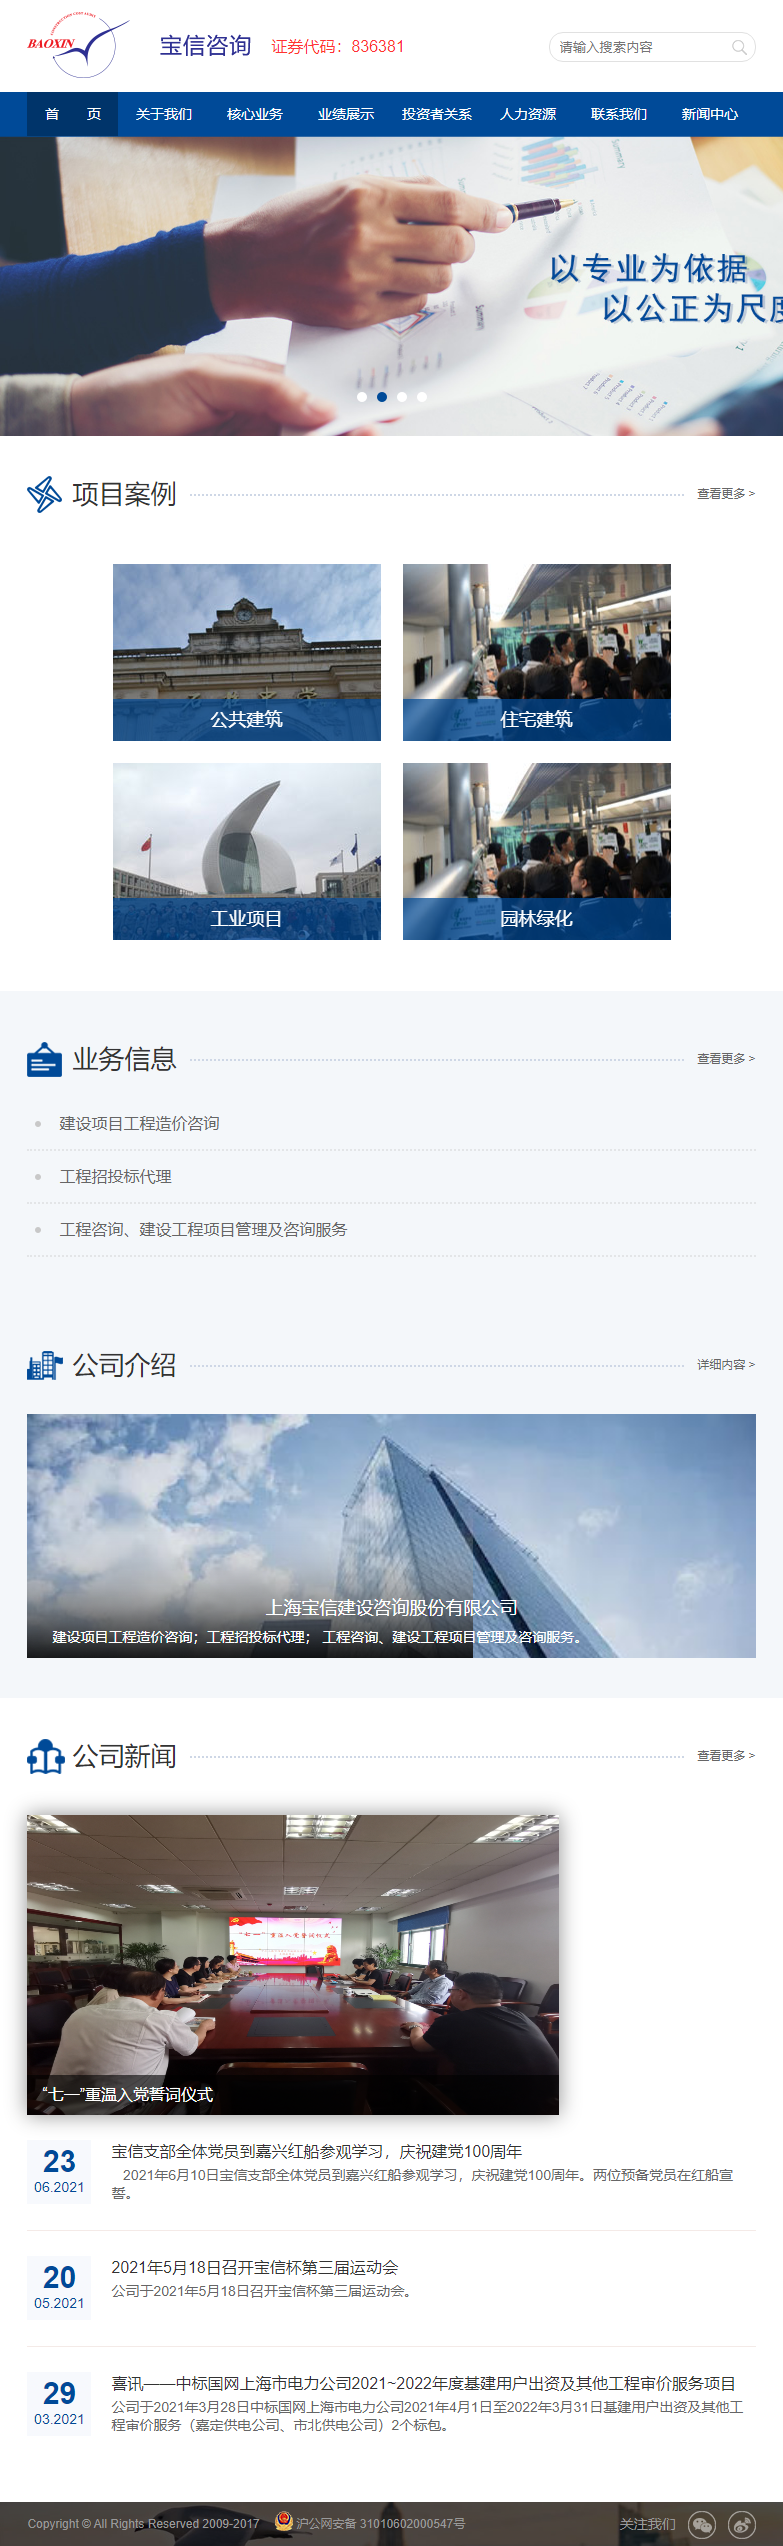 上海宝信建设咨询股份有限公司网站案例